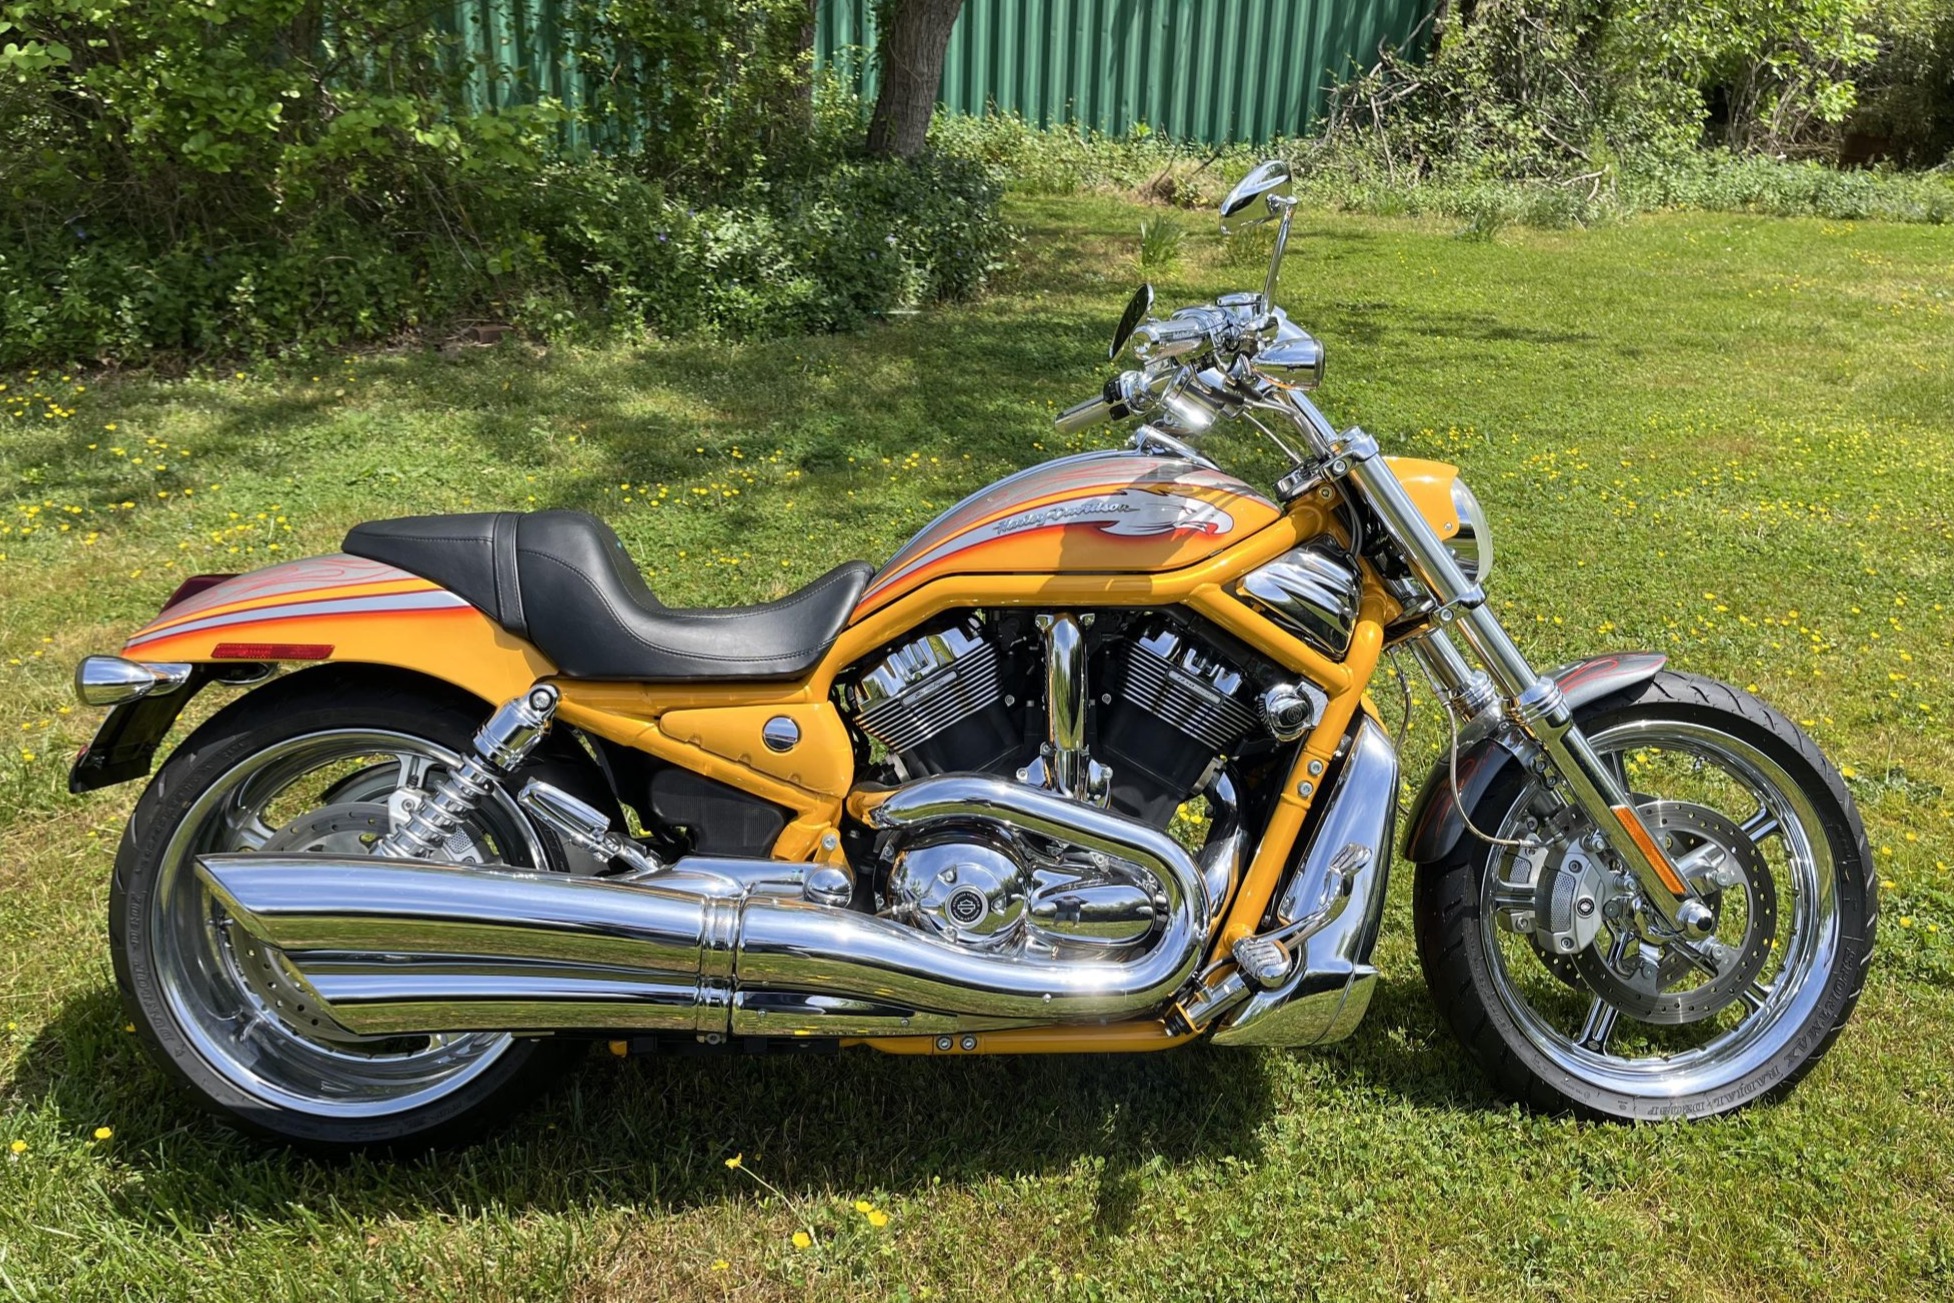 Used 2,700-Mile 2006 Harley-Davidson CVO Screamin’ Eagle V-Rod Review